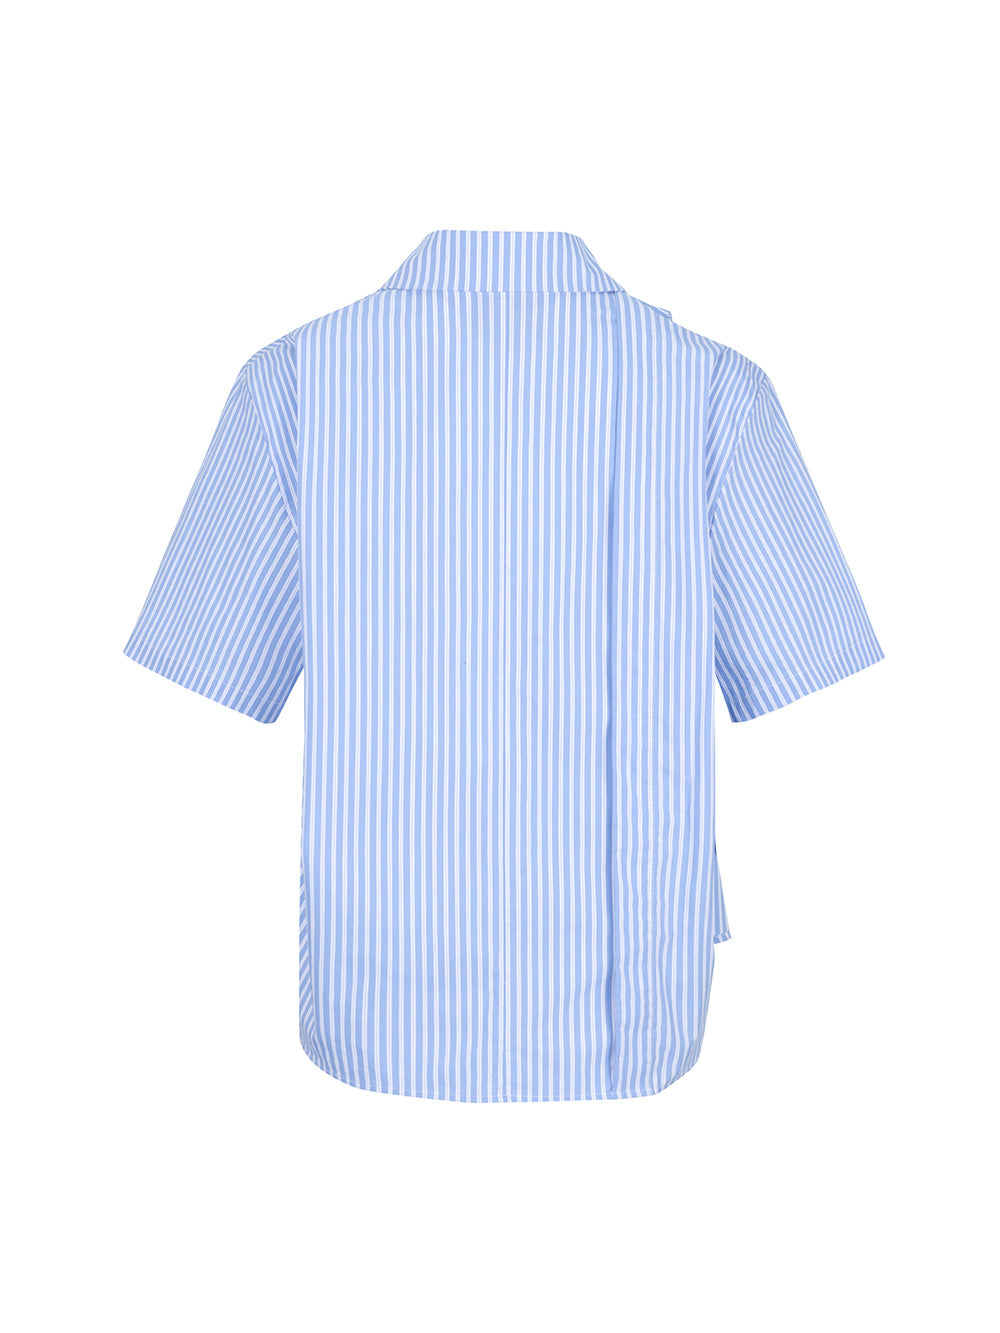 MUKZIN Asymmetric Striped Blue Shirt